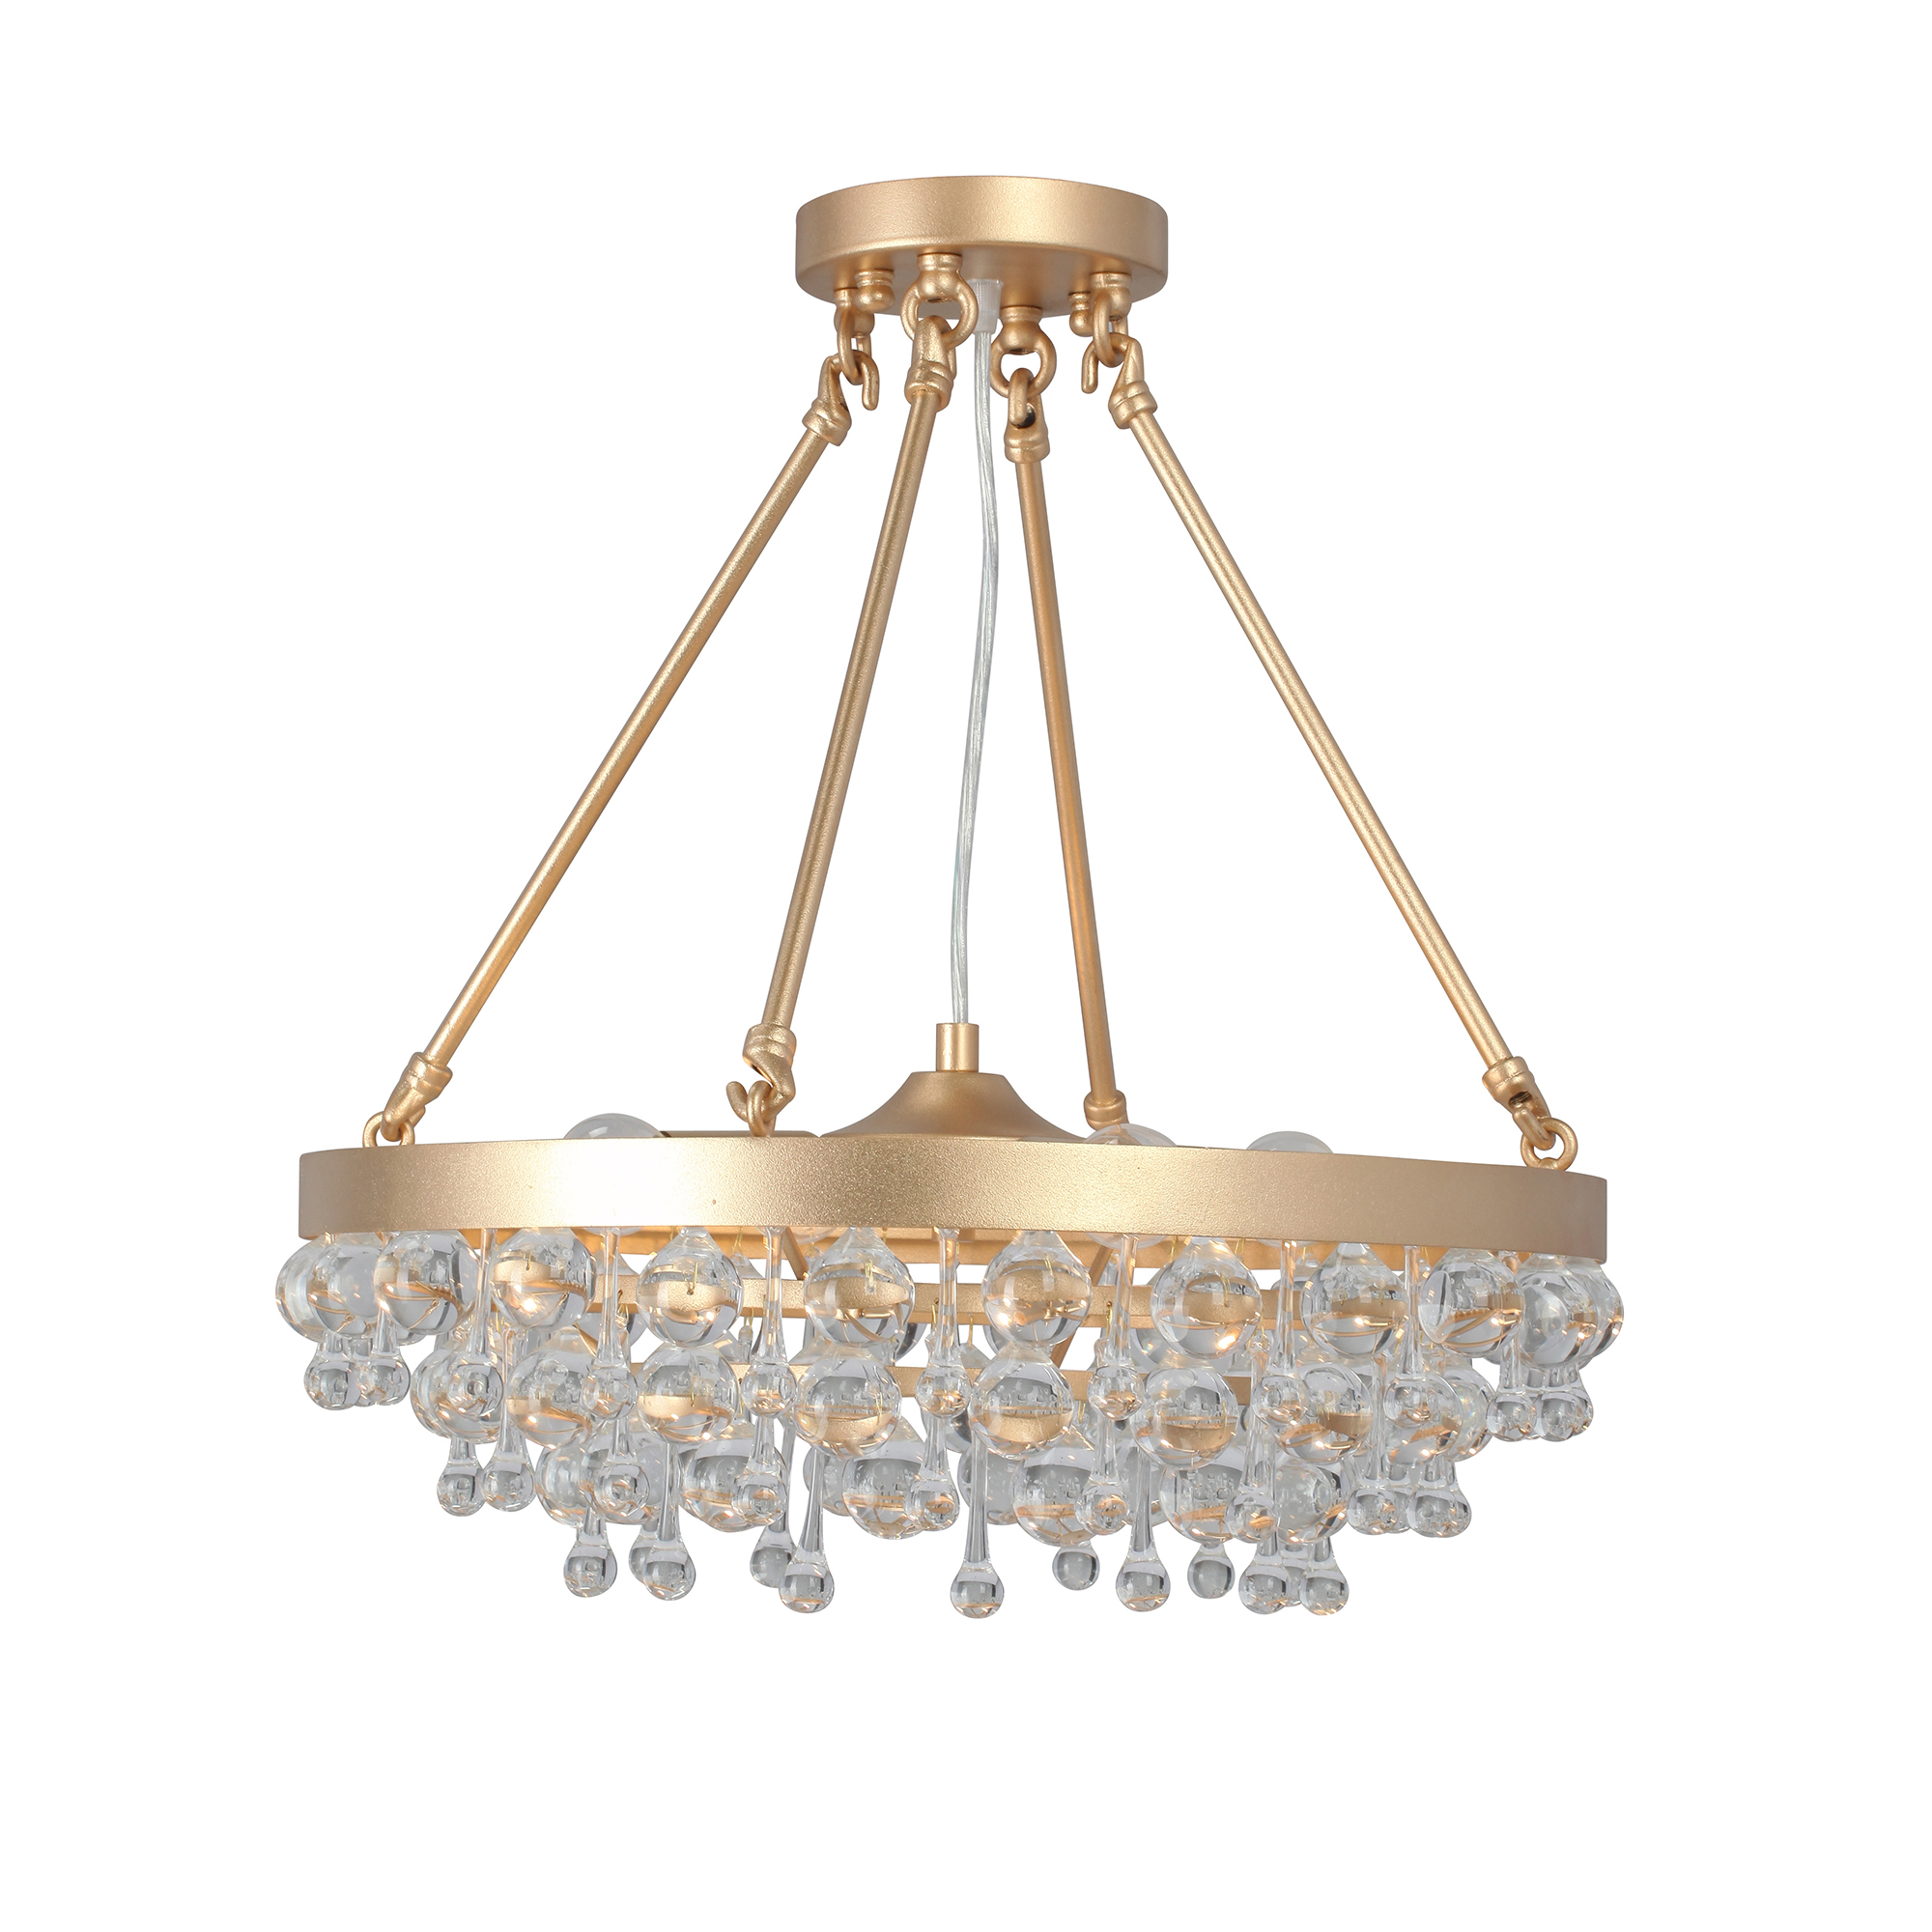 Люстра Vitaluce V5352-8/4S 4Хe14 40 Вт круглая хрустальная люстра в европейском стиле роскошная лампа для гостиной простая лампа для виллы столовой спальни диаметр 80 см